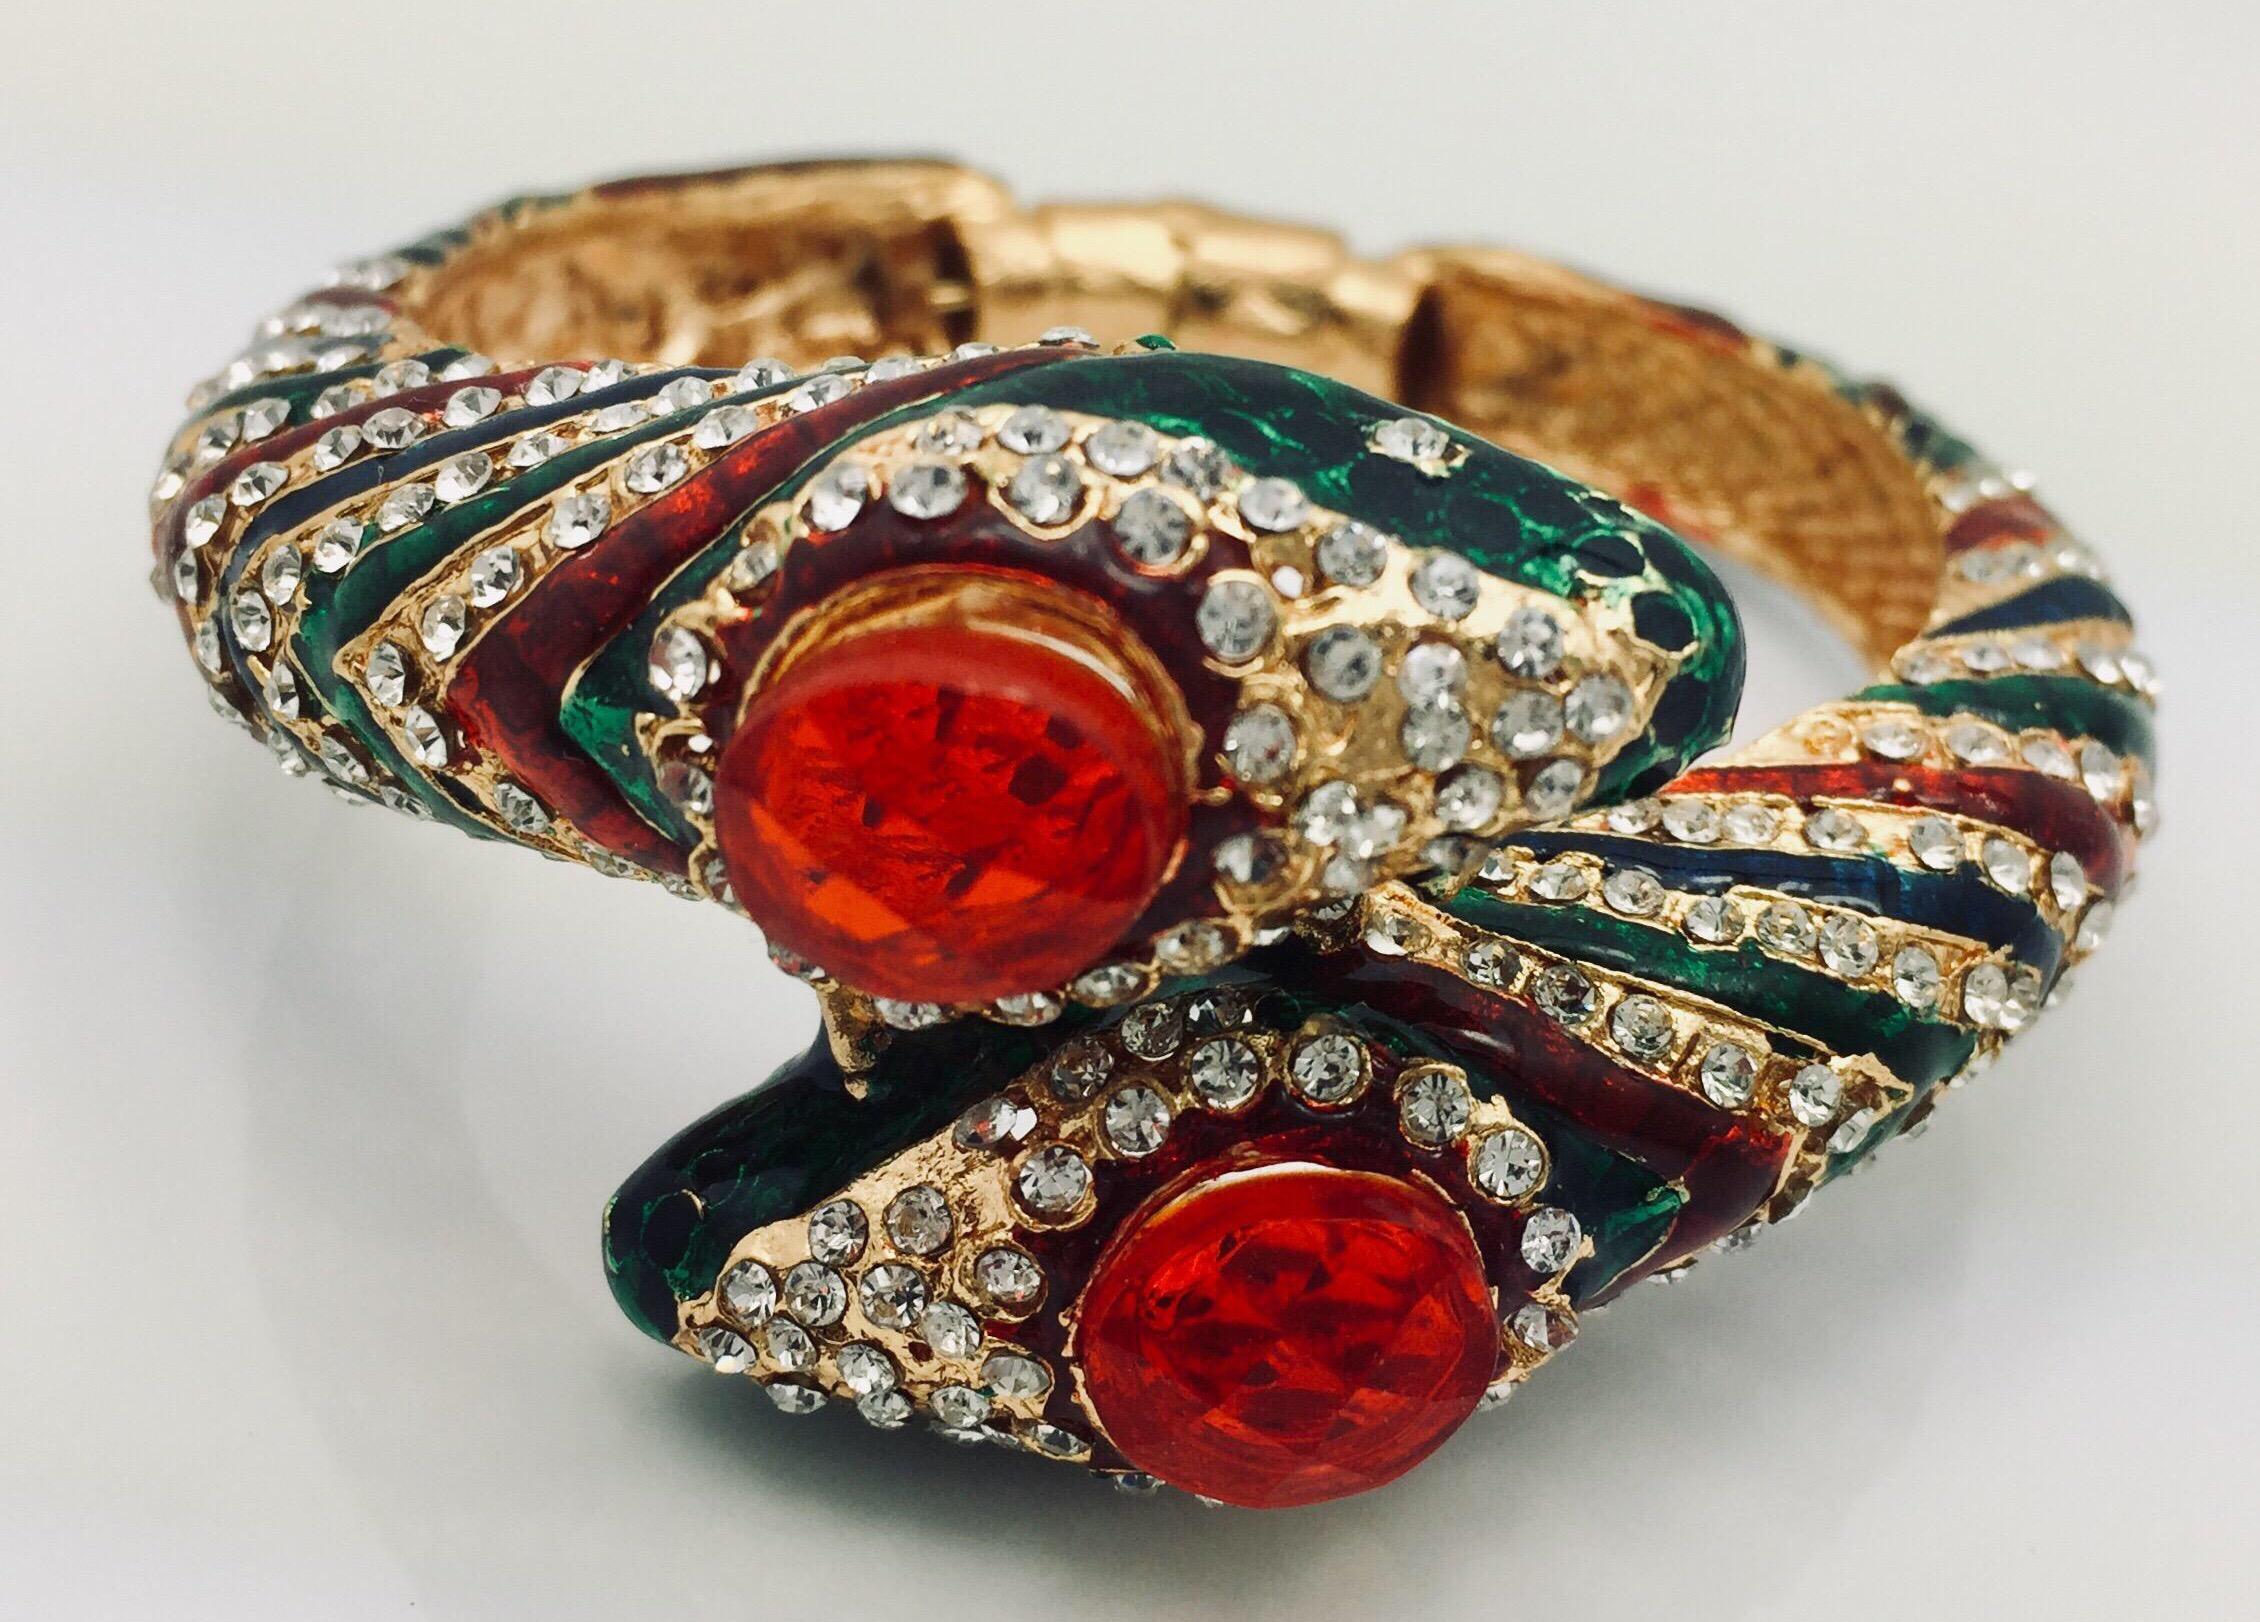 Ce superbe bracelet serpent à charnière est incrusté de zircons cubiques étincelants et orné d'un émail riche et audacieux de couleur verte, rouge et bleue.

Environ : 1,13 